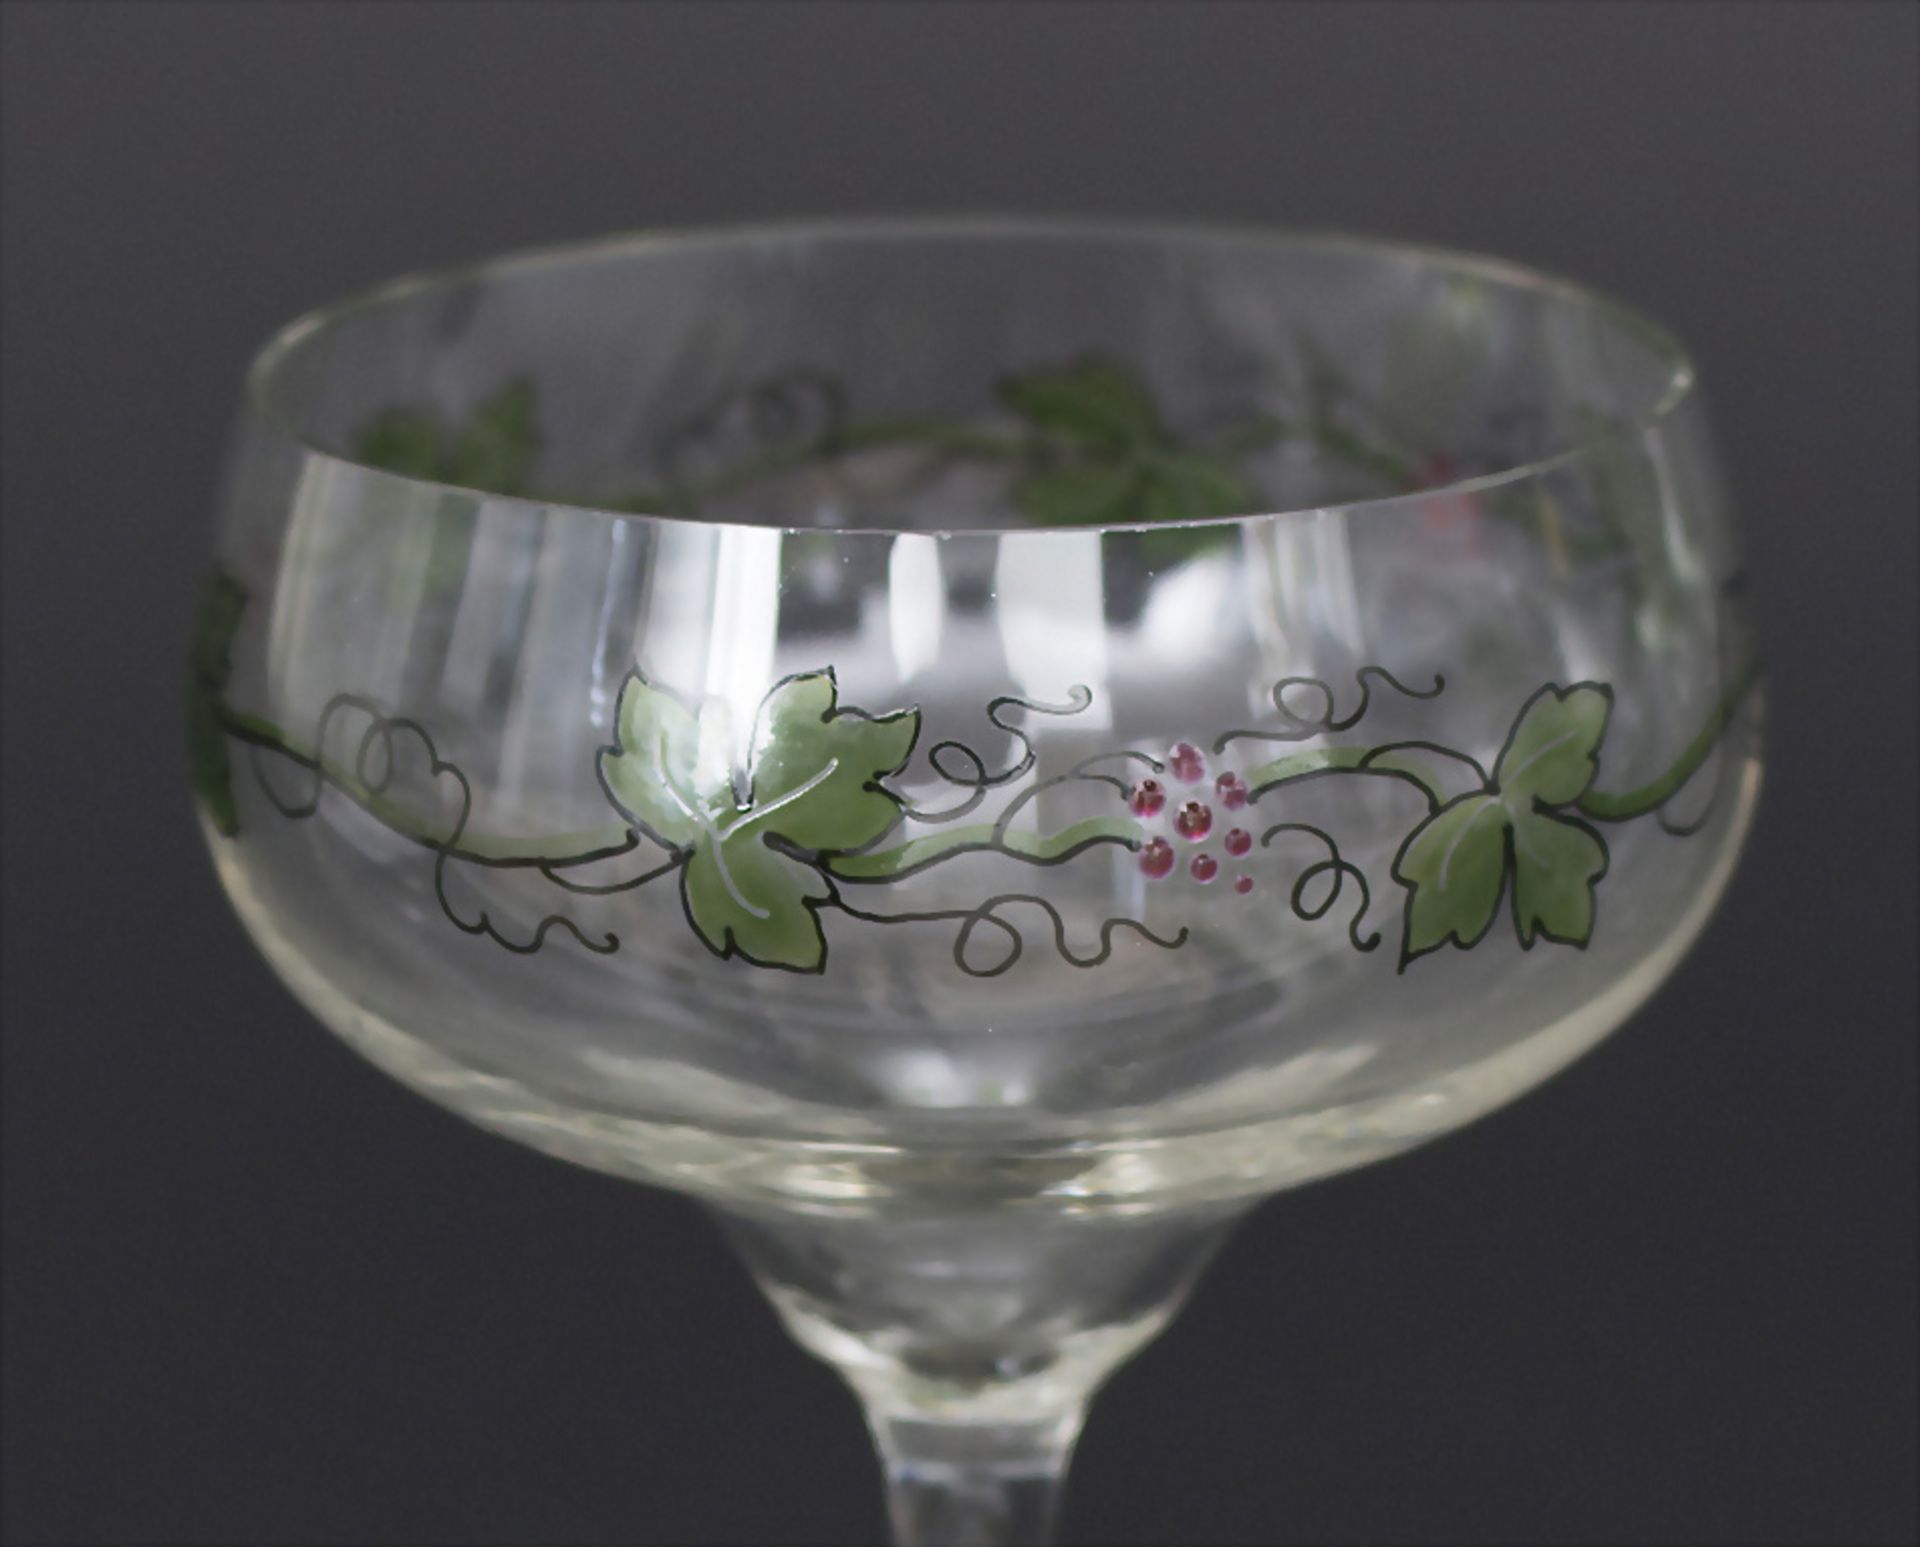 12 Jugendstil Weingläser / A set of 12 Art Nouveau wine glasses, Theresienthal, um 1900 - Bild 2 aus 2